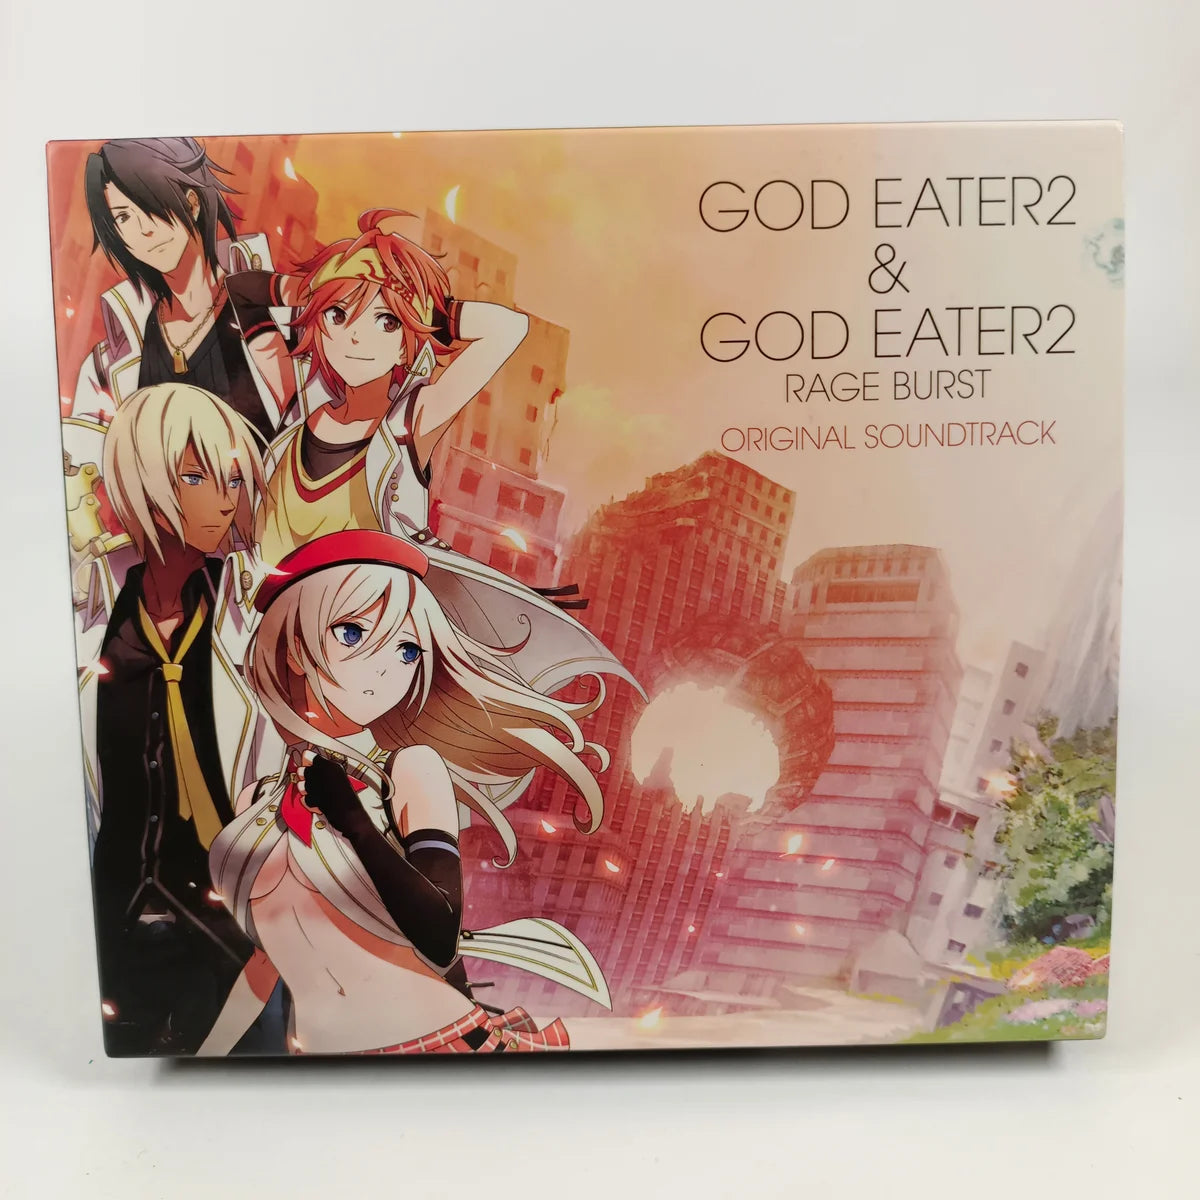 God Eater 2 & God Eater 2 Rage Burst Original Soundtrack